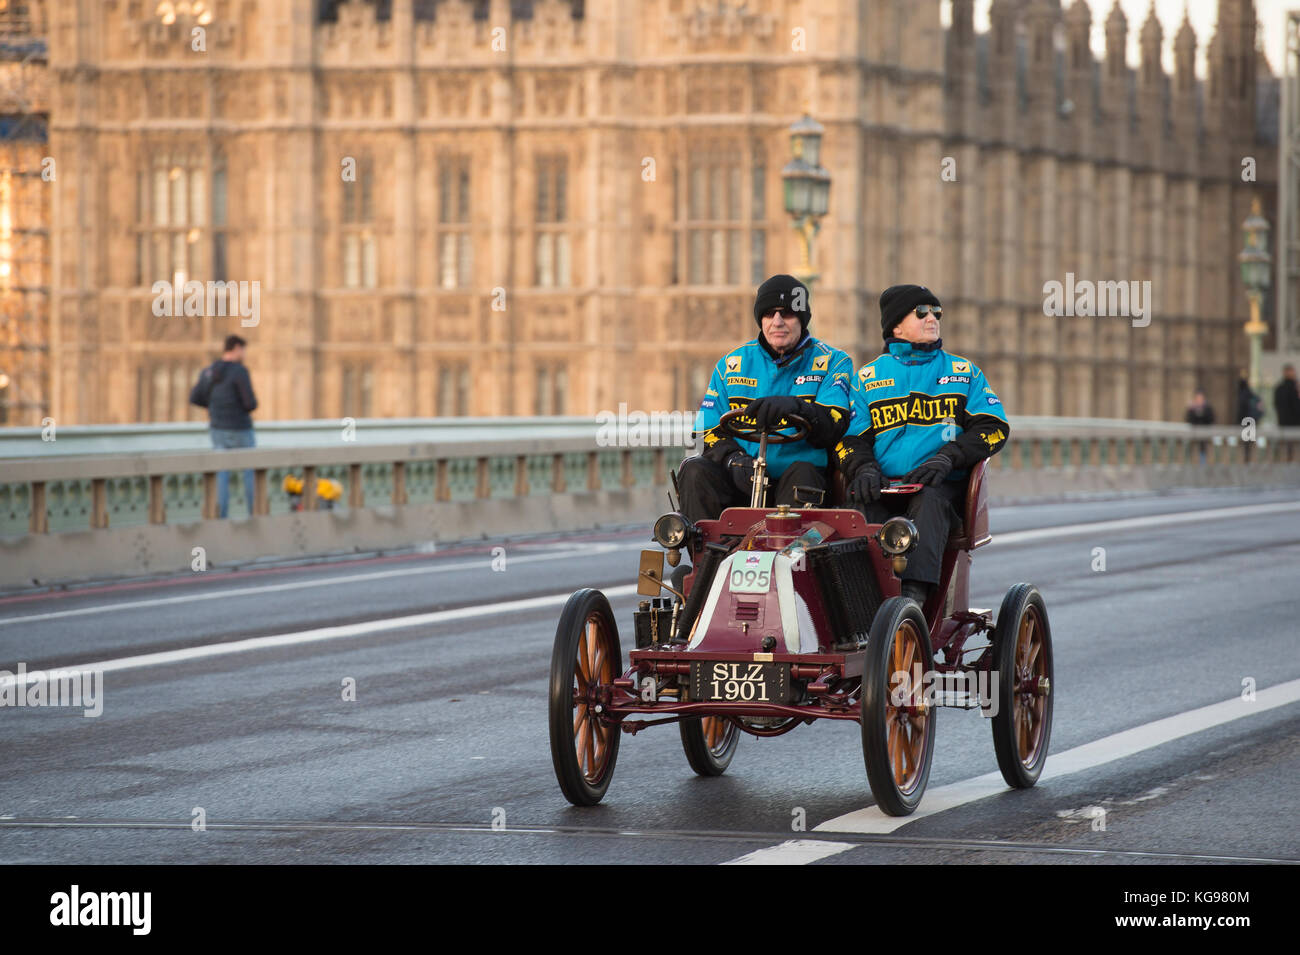 5 novembre 2017. Bonhams de Londres à Brighton, la course de voiture de vétéran, la plus longue course automobile au monde, 1901 Renault traversant le pont de Westminster. Banque D'Images